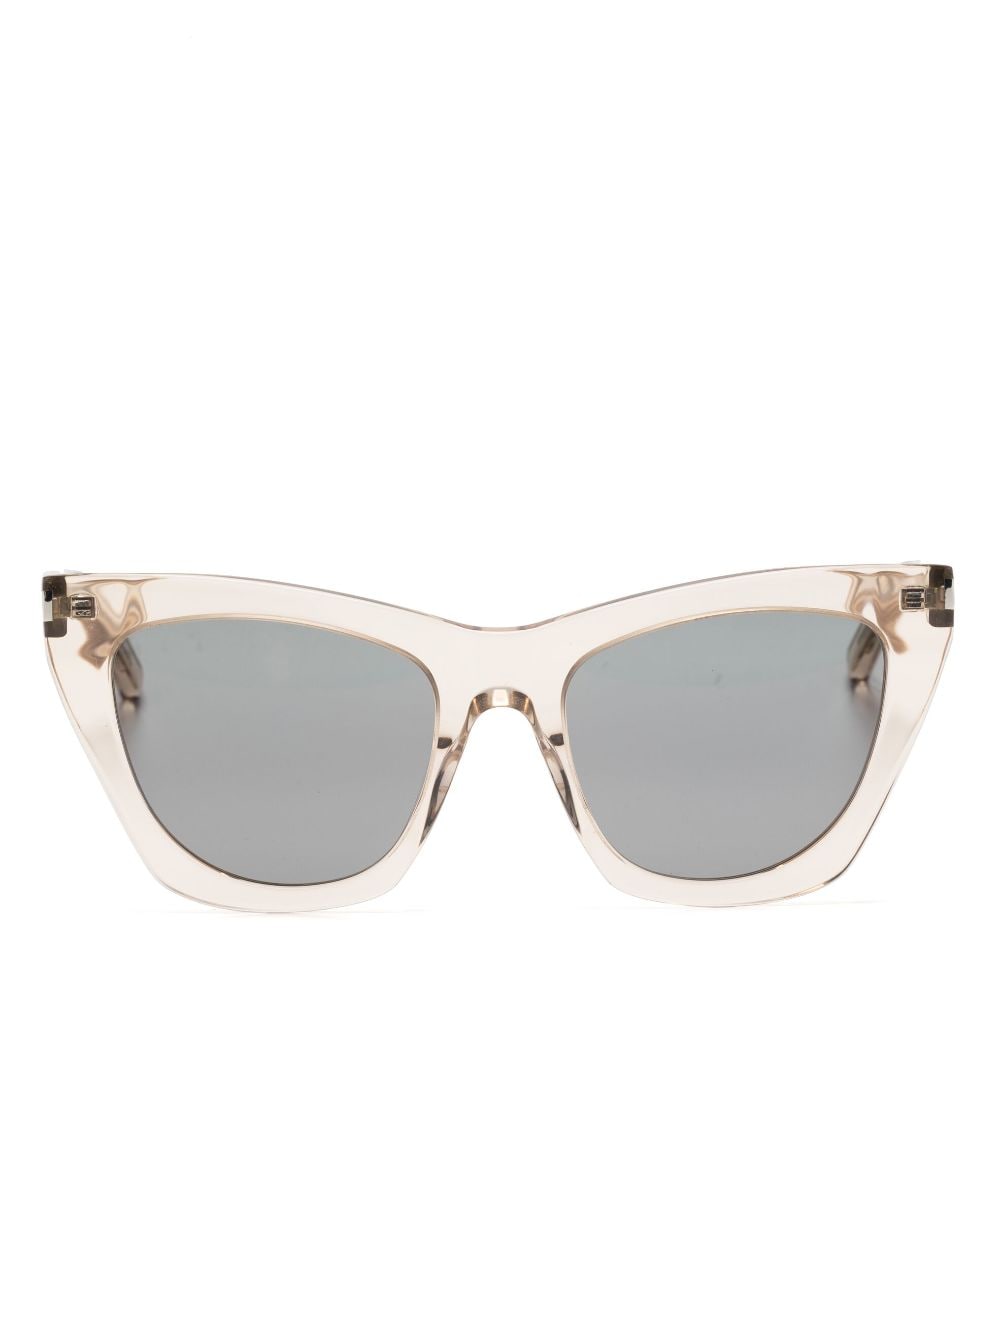 Saint Laurent Eyewear Sonnenbrille mit Cat-Eye-Gestell - Nude von Saint Laurent Eyewear